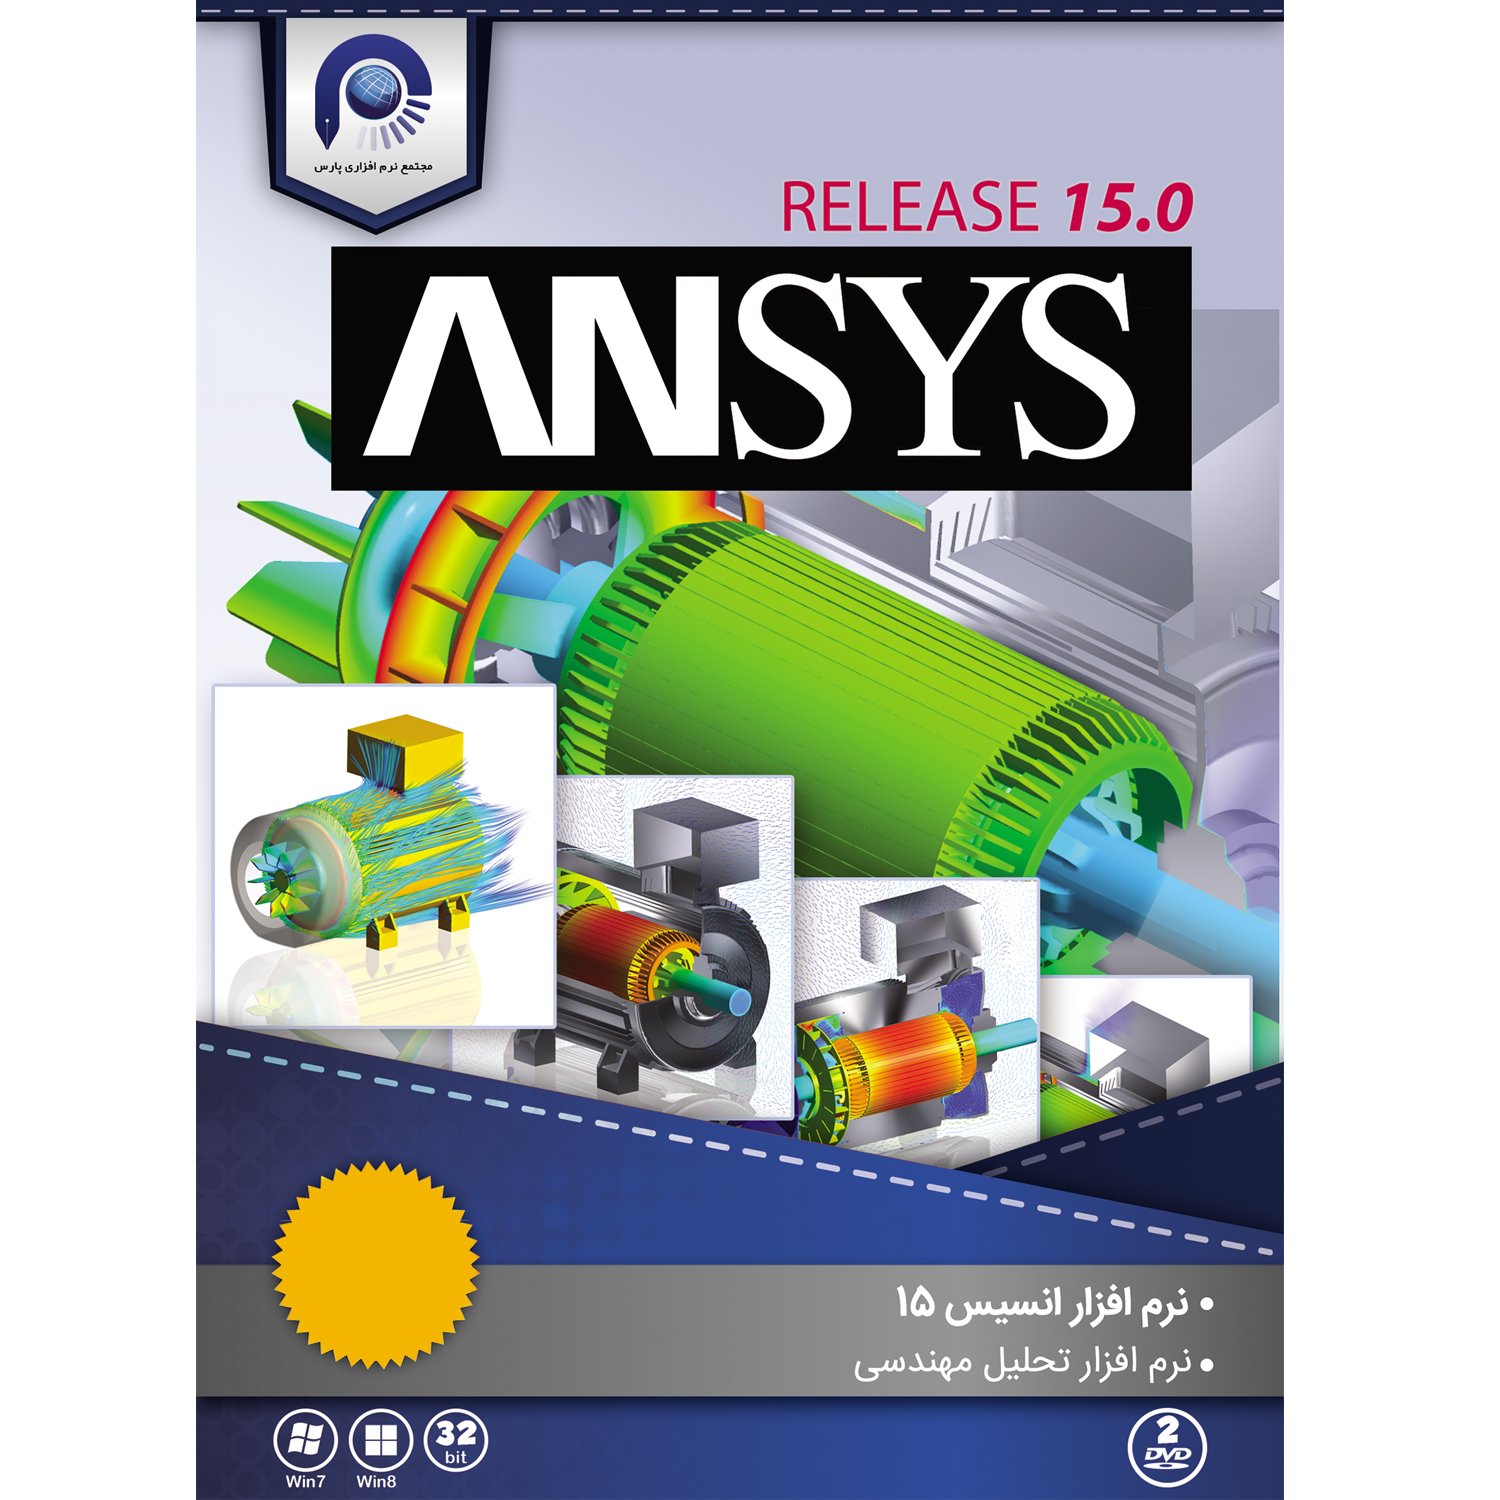 نرم افزار Ansys 15  نسخه 32 بیتی نشر مجتمع نرم افزاری پارس